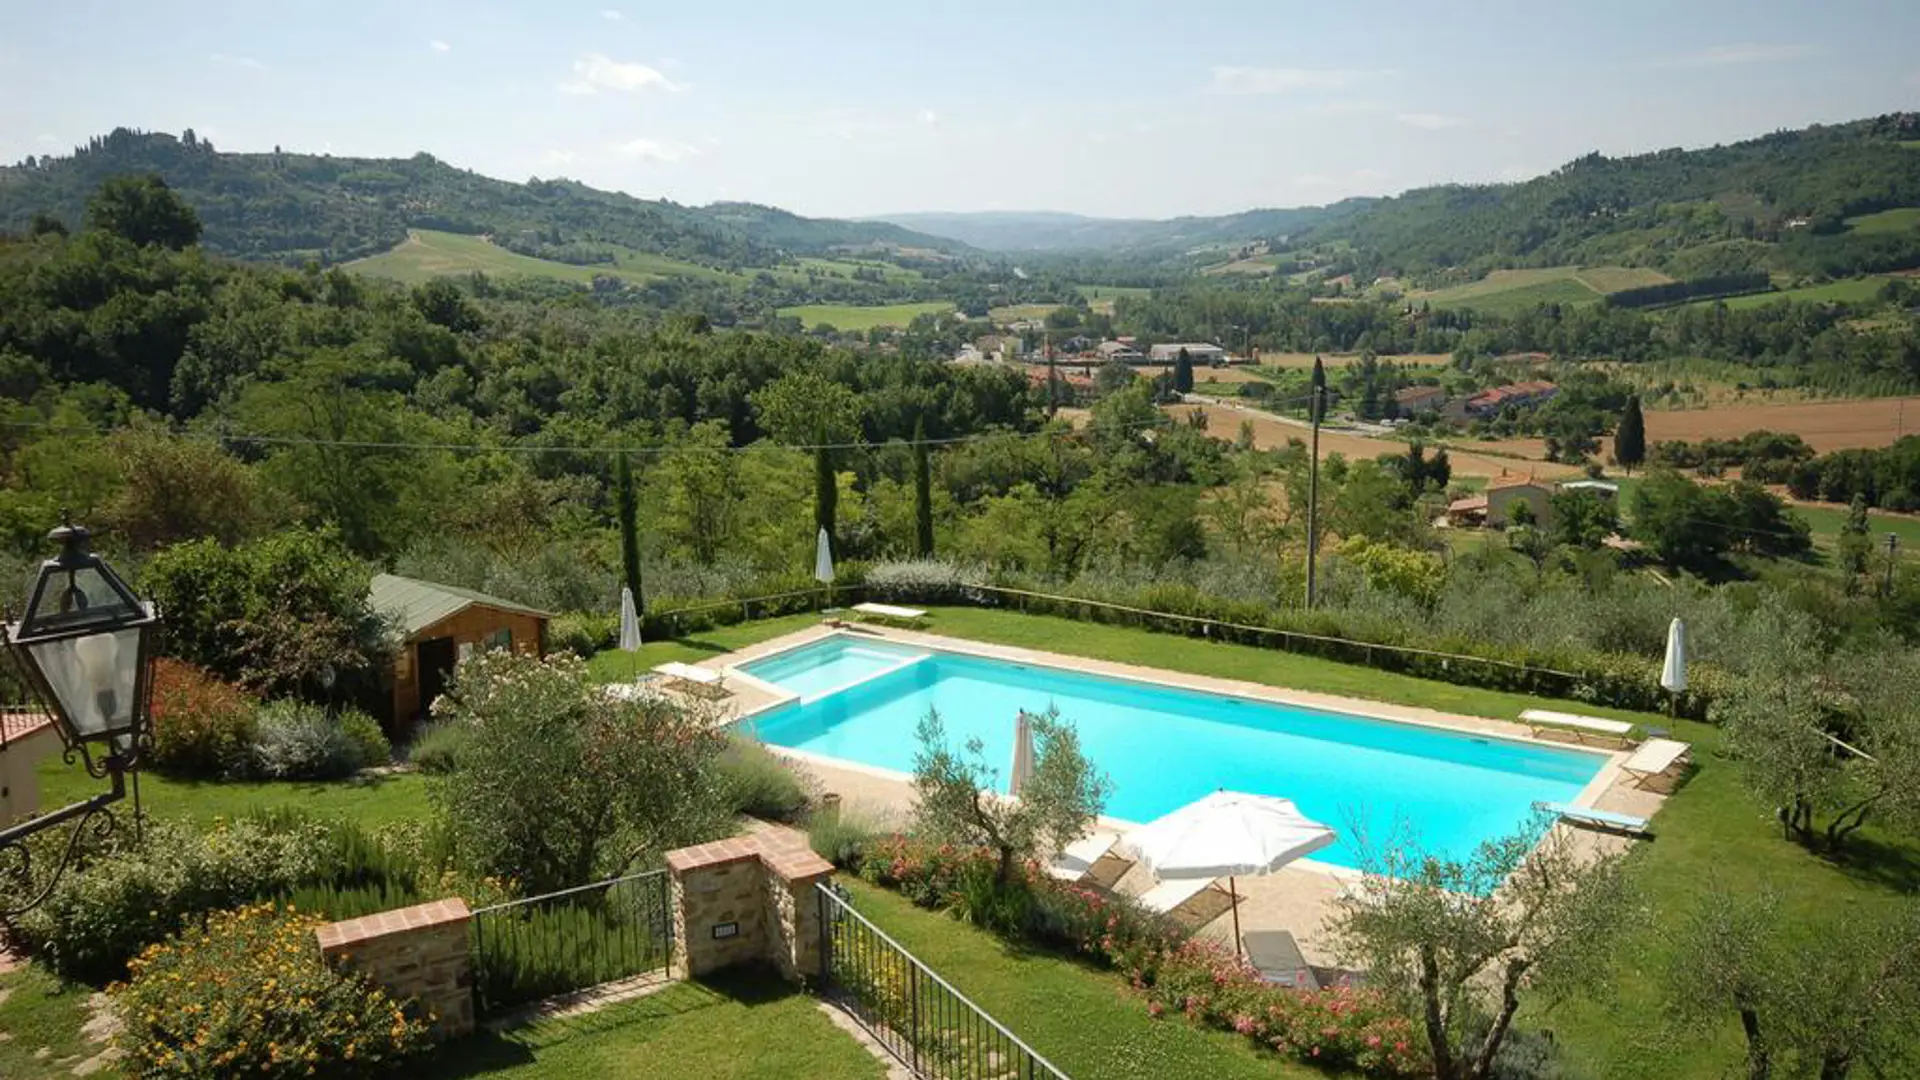 Ditt hotell i Toscana har det vakreste bassenget med utsikt.